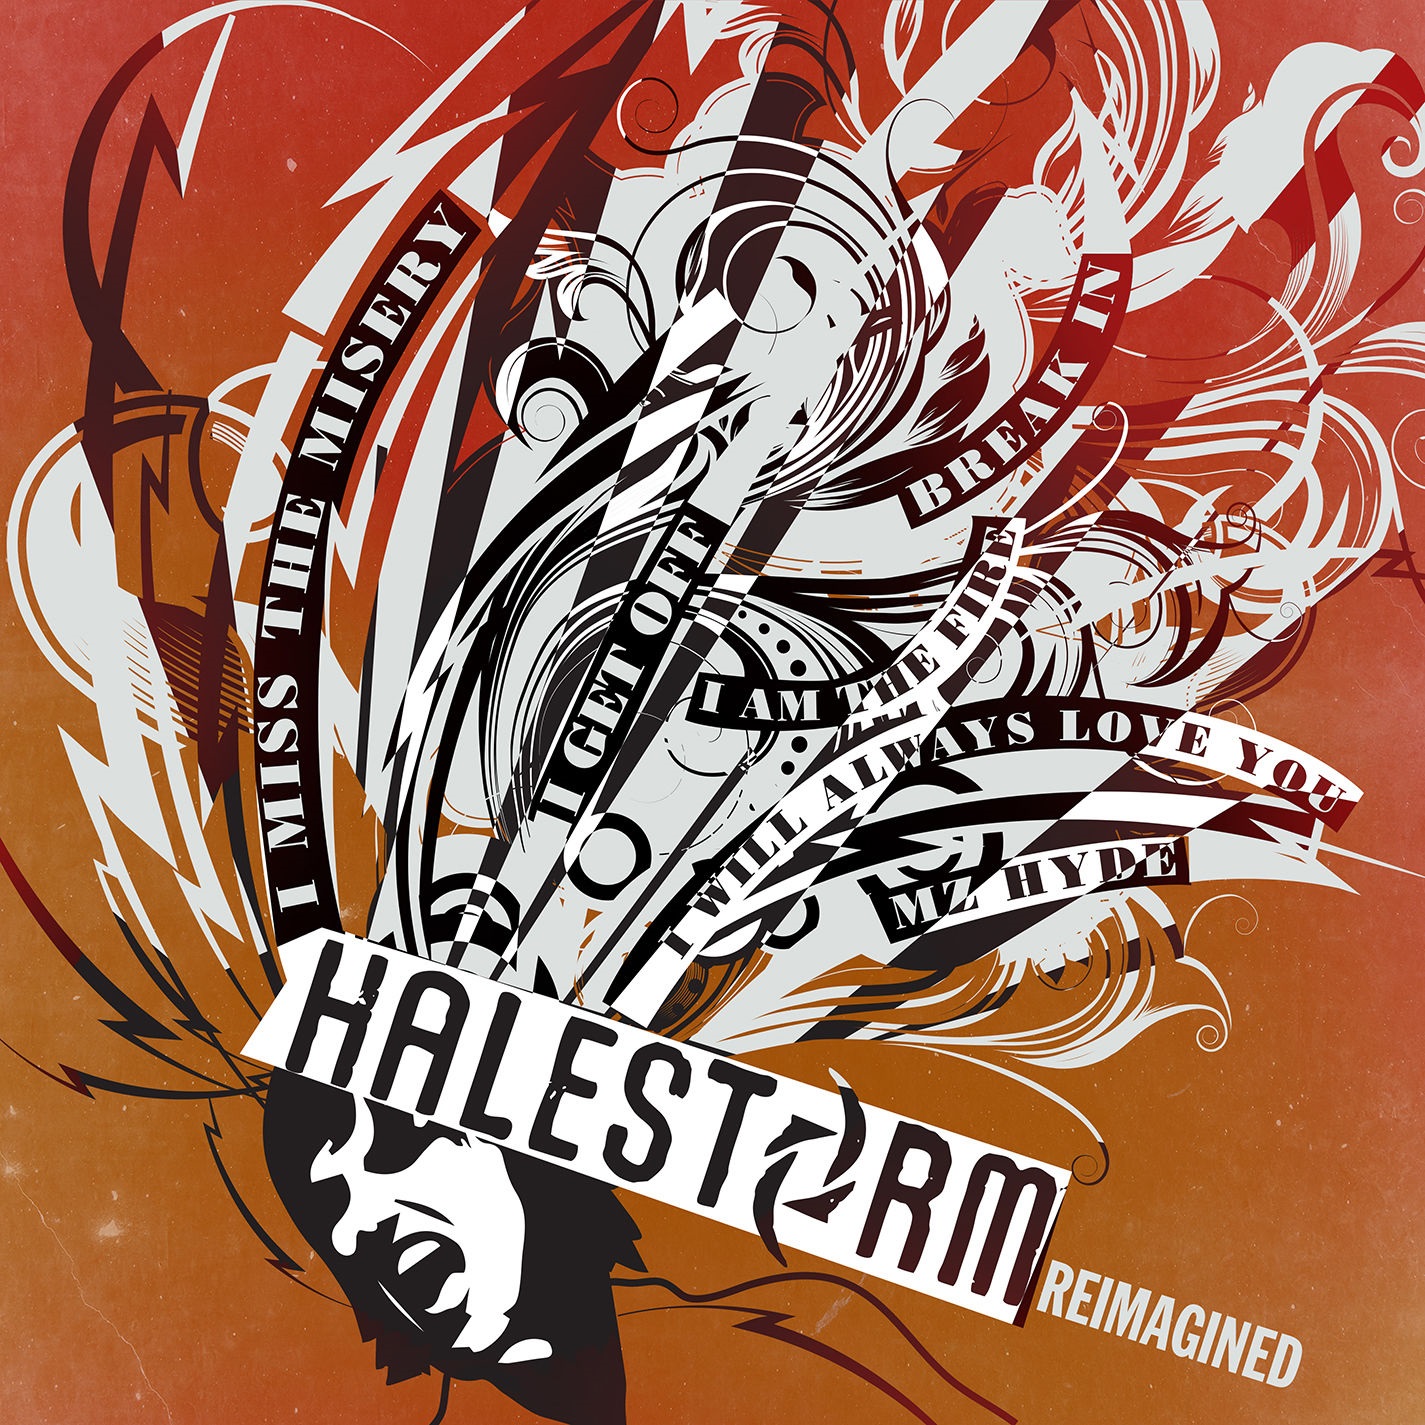 Halestorm – Reimagined (EP) (2020) [FLAC 24bit/96kHz]